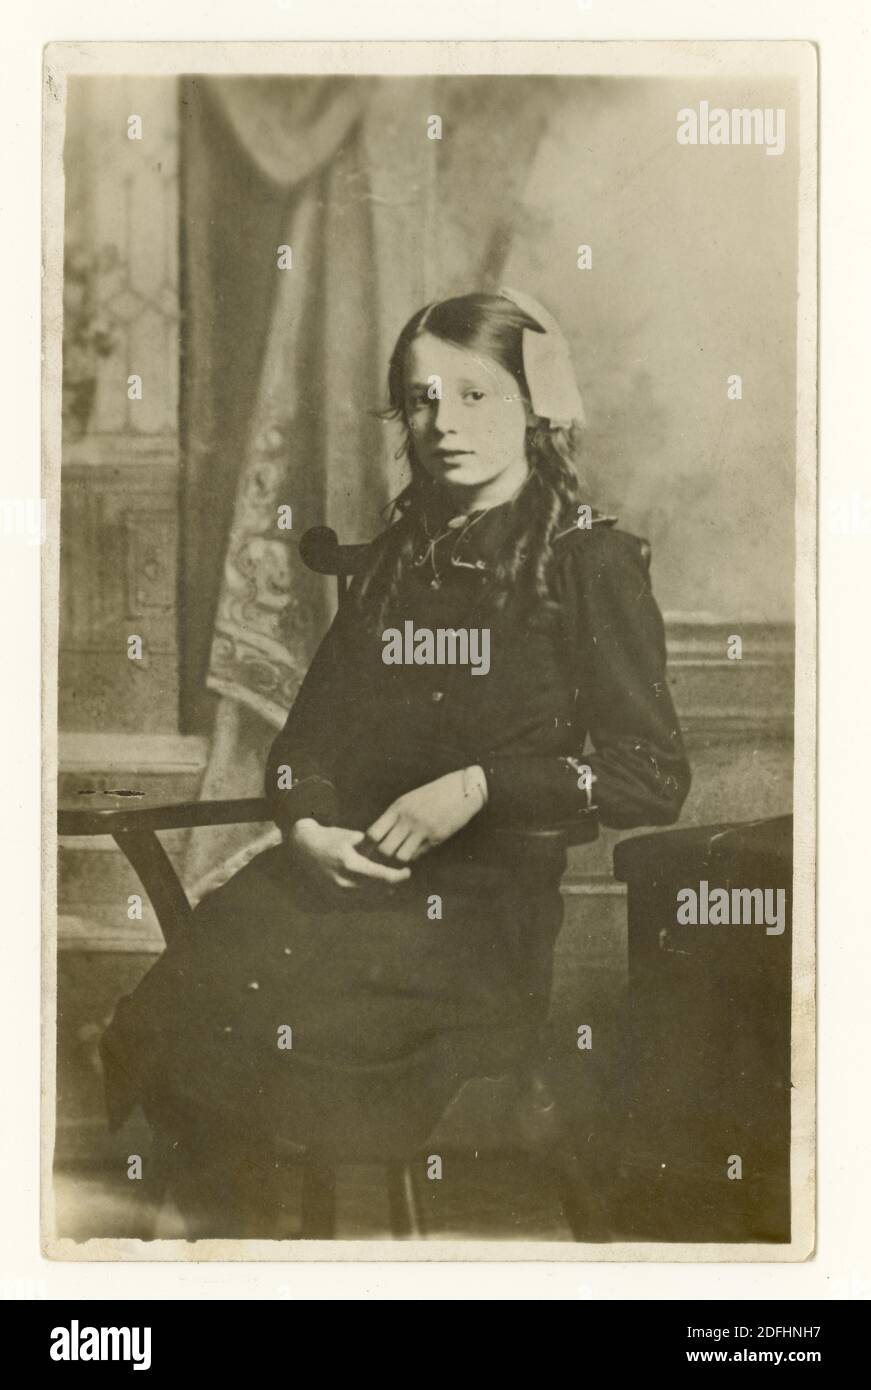 Originale cartolina commemorativa dei primi anni del 1900 della prima guerra mondiale di una ragazza deceduta chiamata Minnie che era di anni teenage quando morì, datata gennaio 1916, Regno Unito Foto Stock